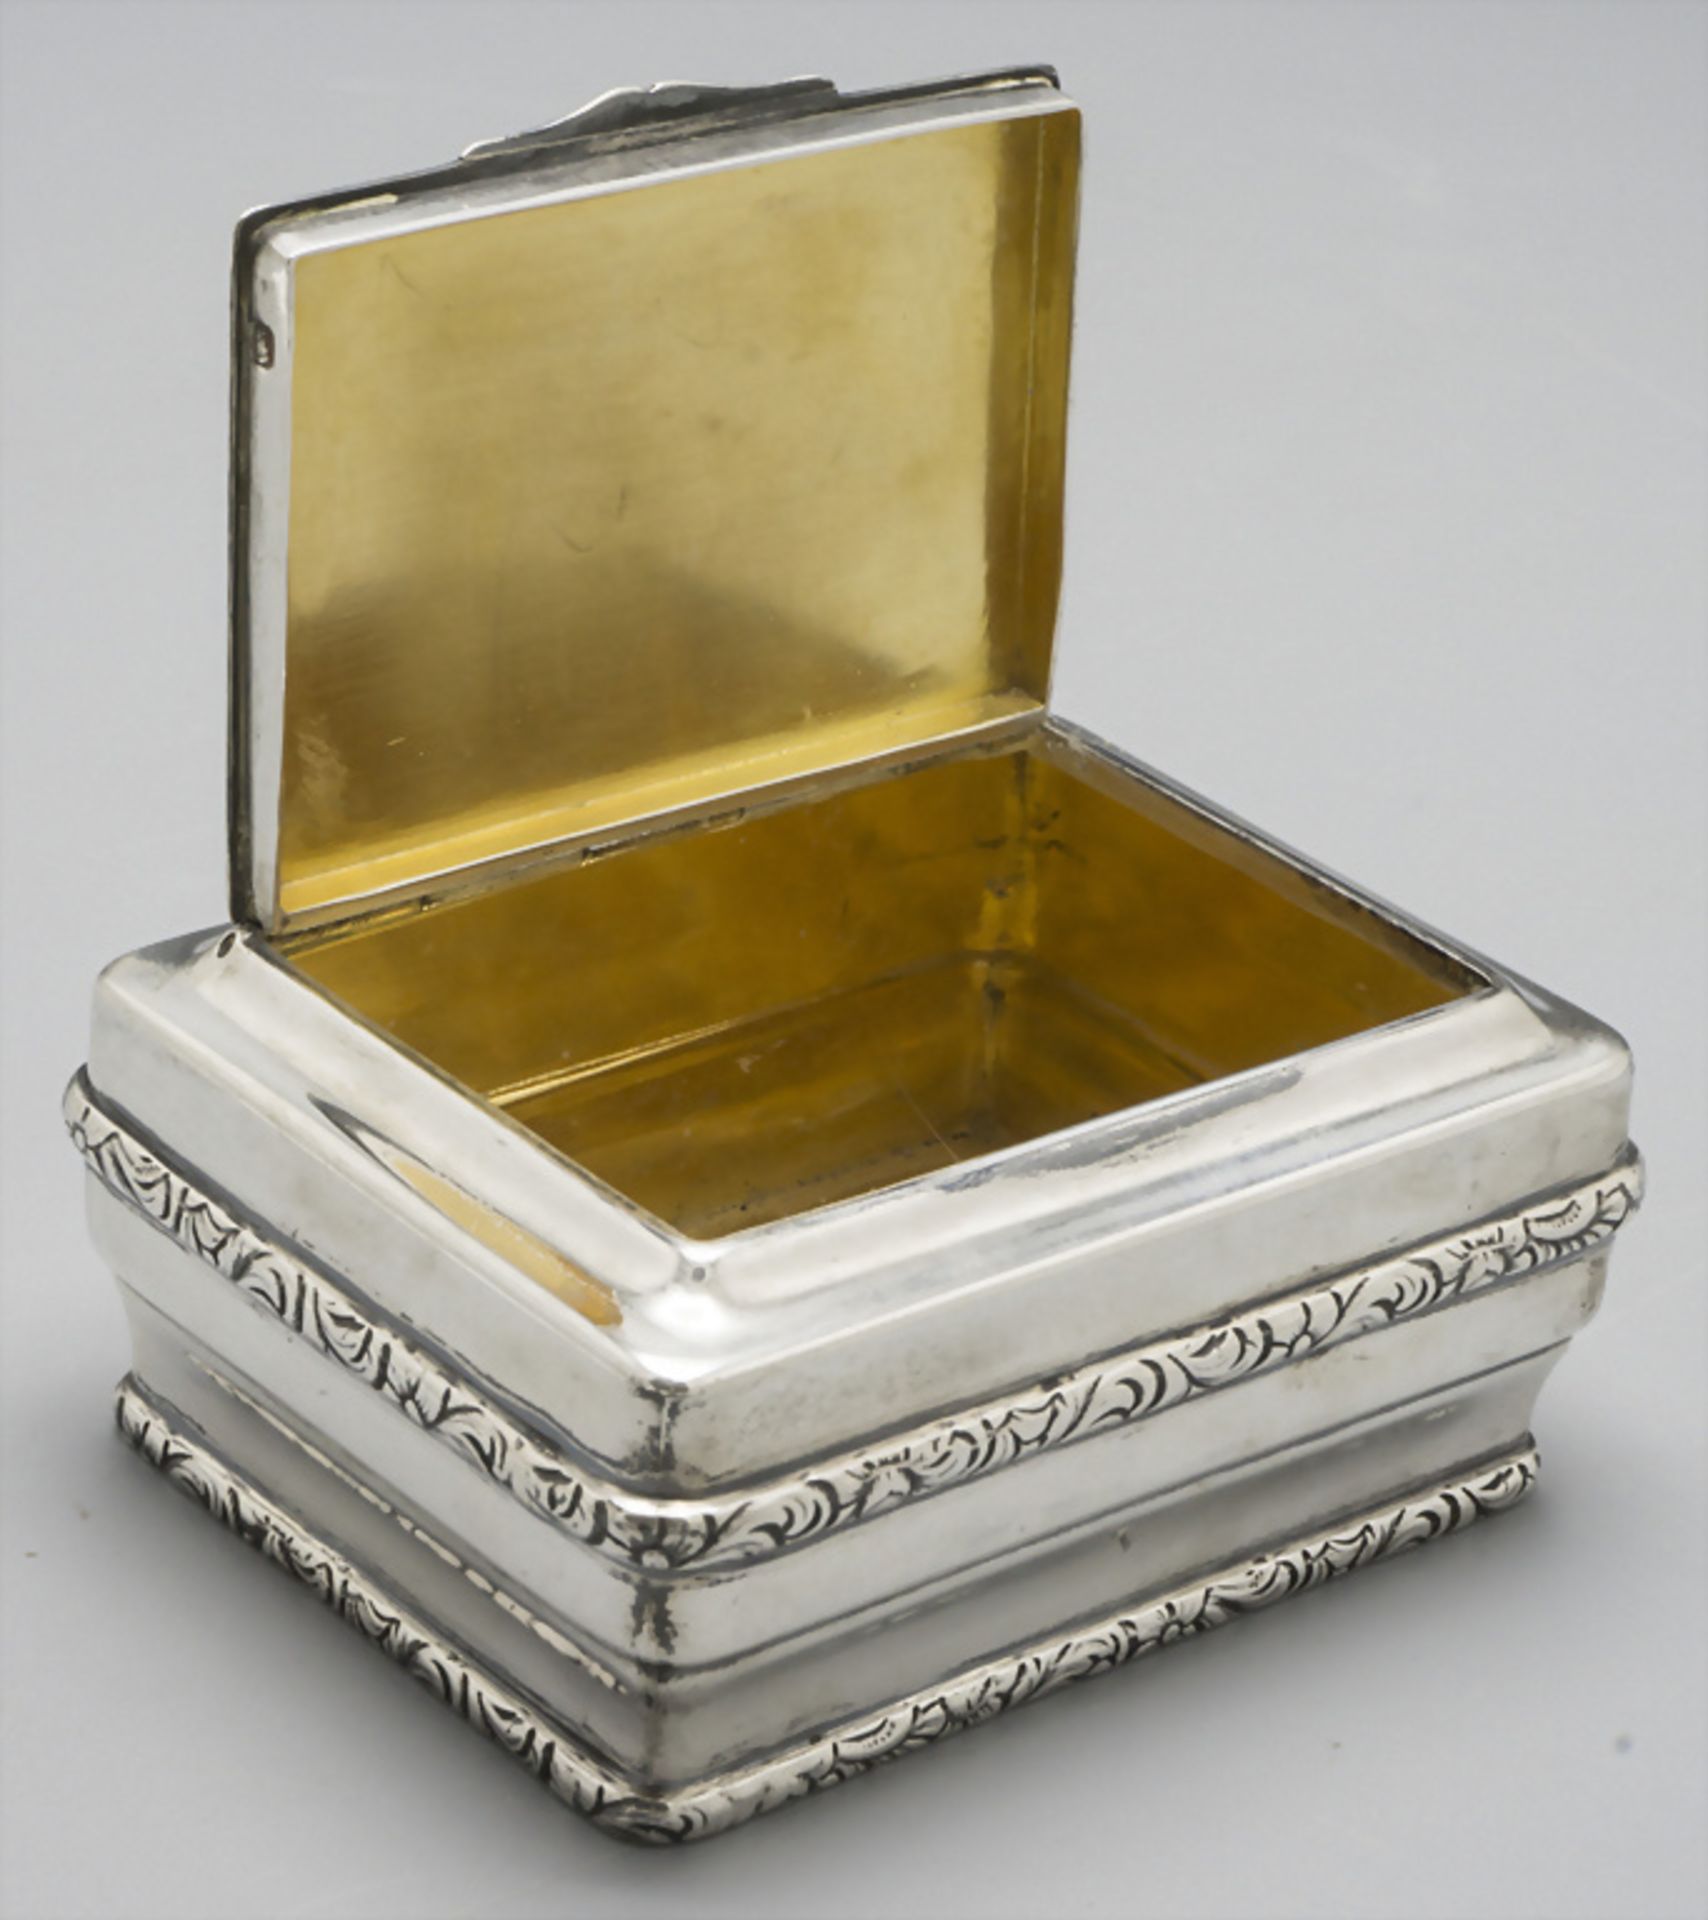 Tabatiere / Boite en argent massif / A silver snuff box, A. Risler & Carré, Paris, um 1900